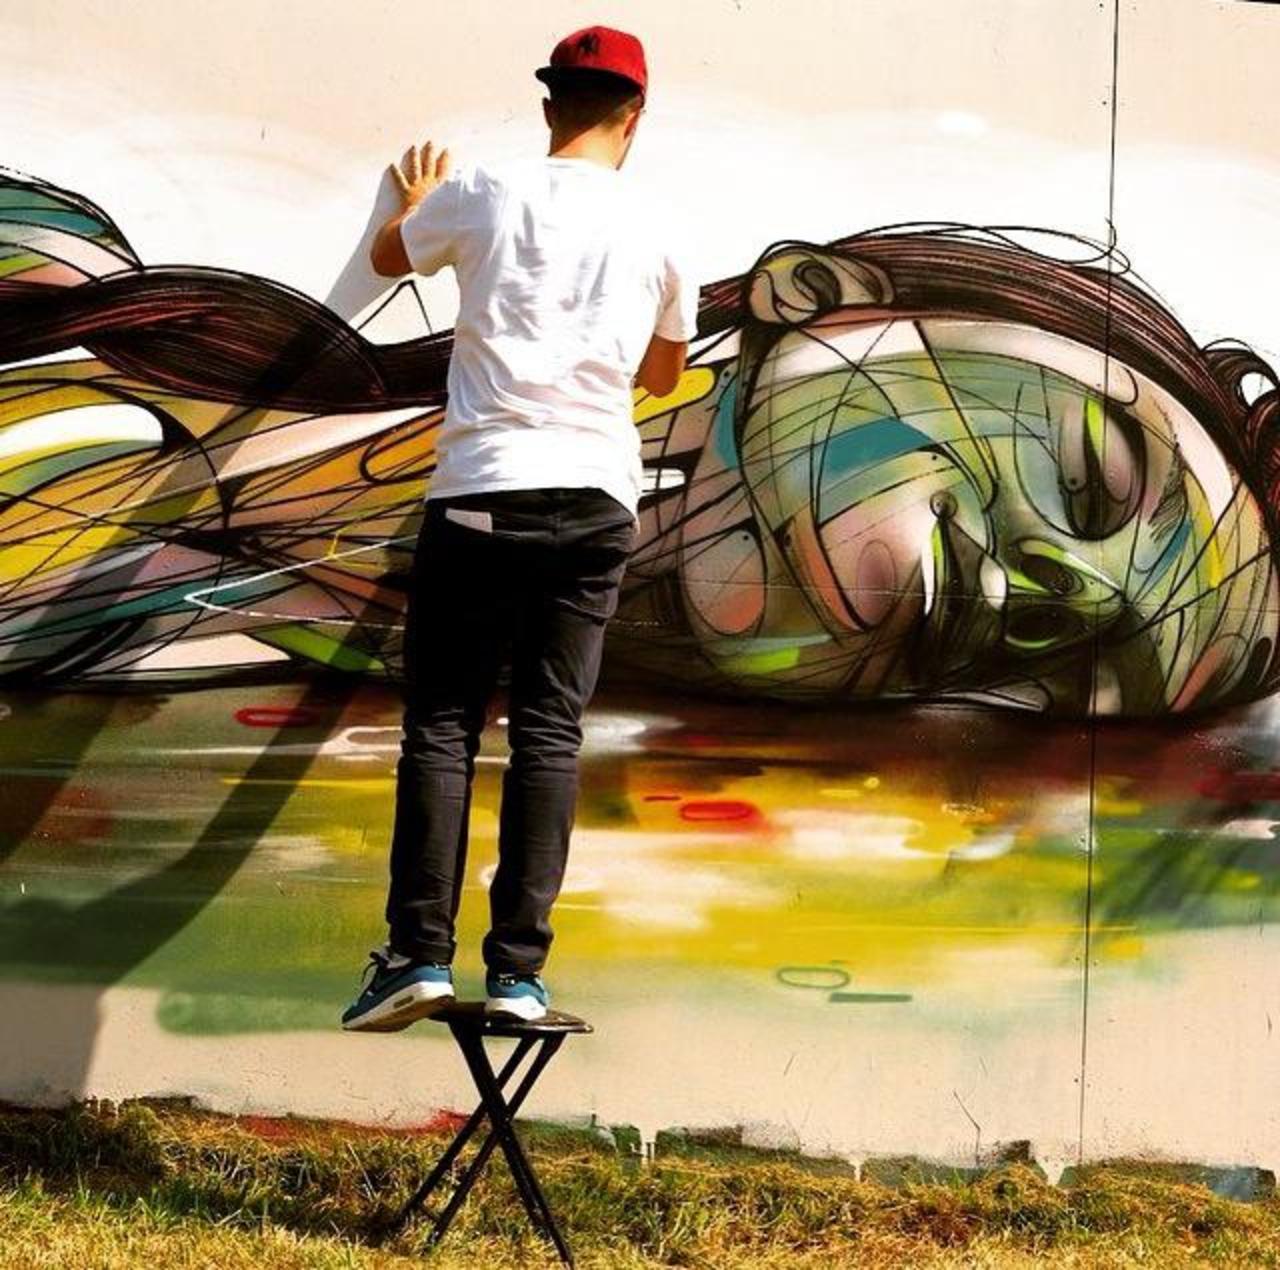 Super dope! "@GoogleStreetArt: Street Art by the artist • Hopare 

#art #arte #graffiti #streetart http://t.co/1KfVMJke4N"